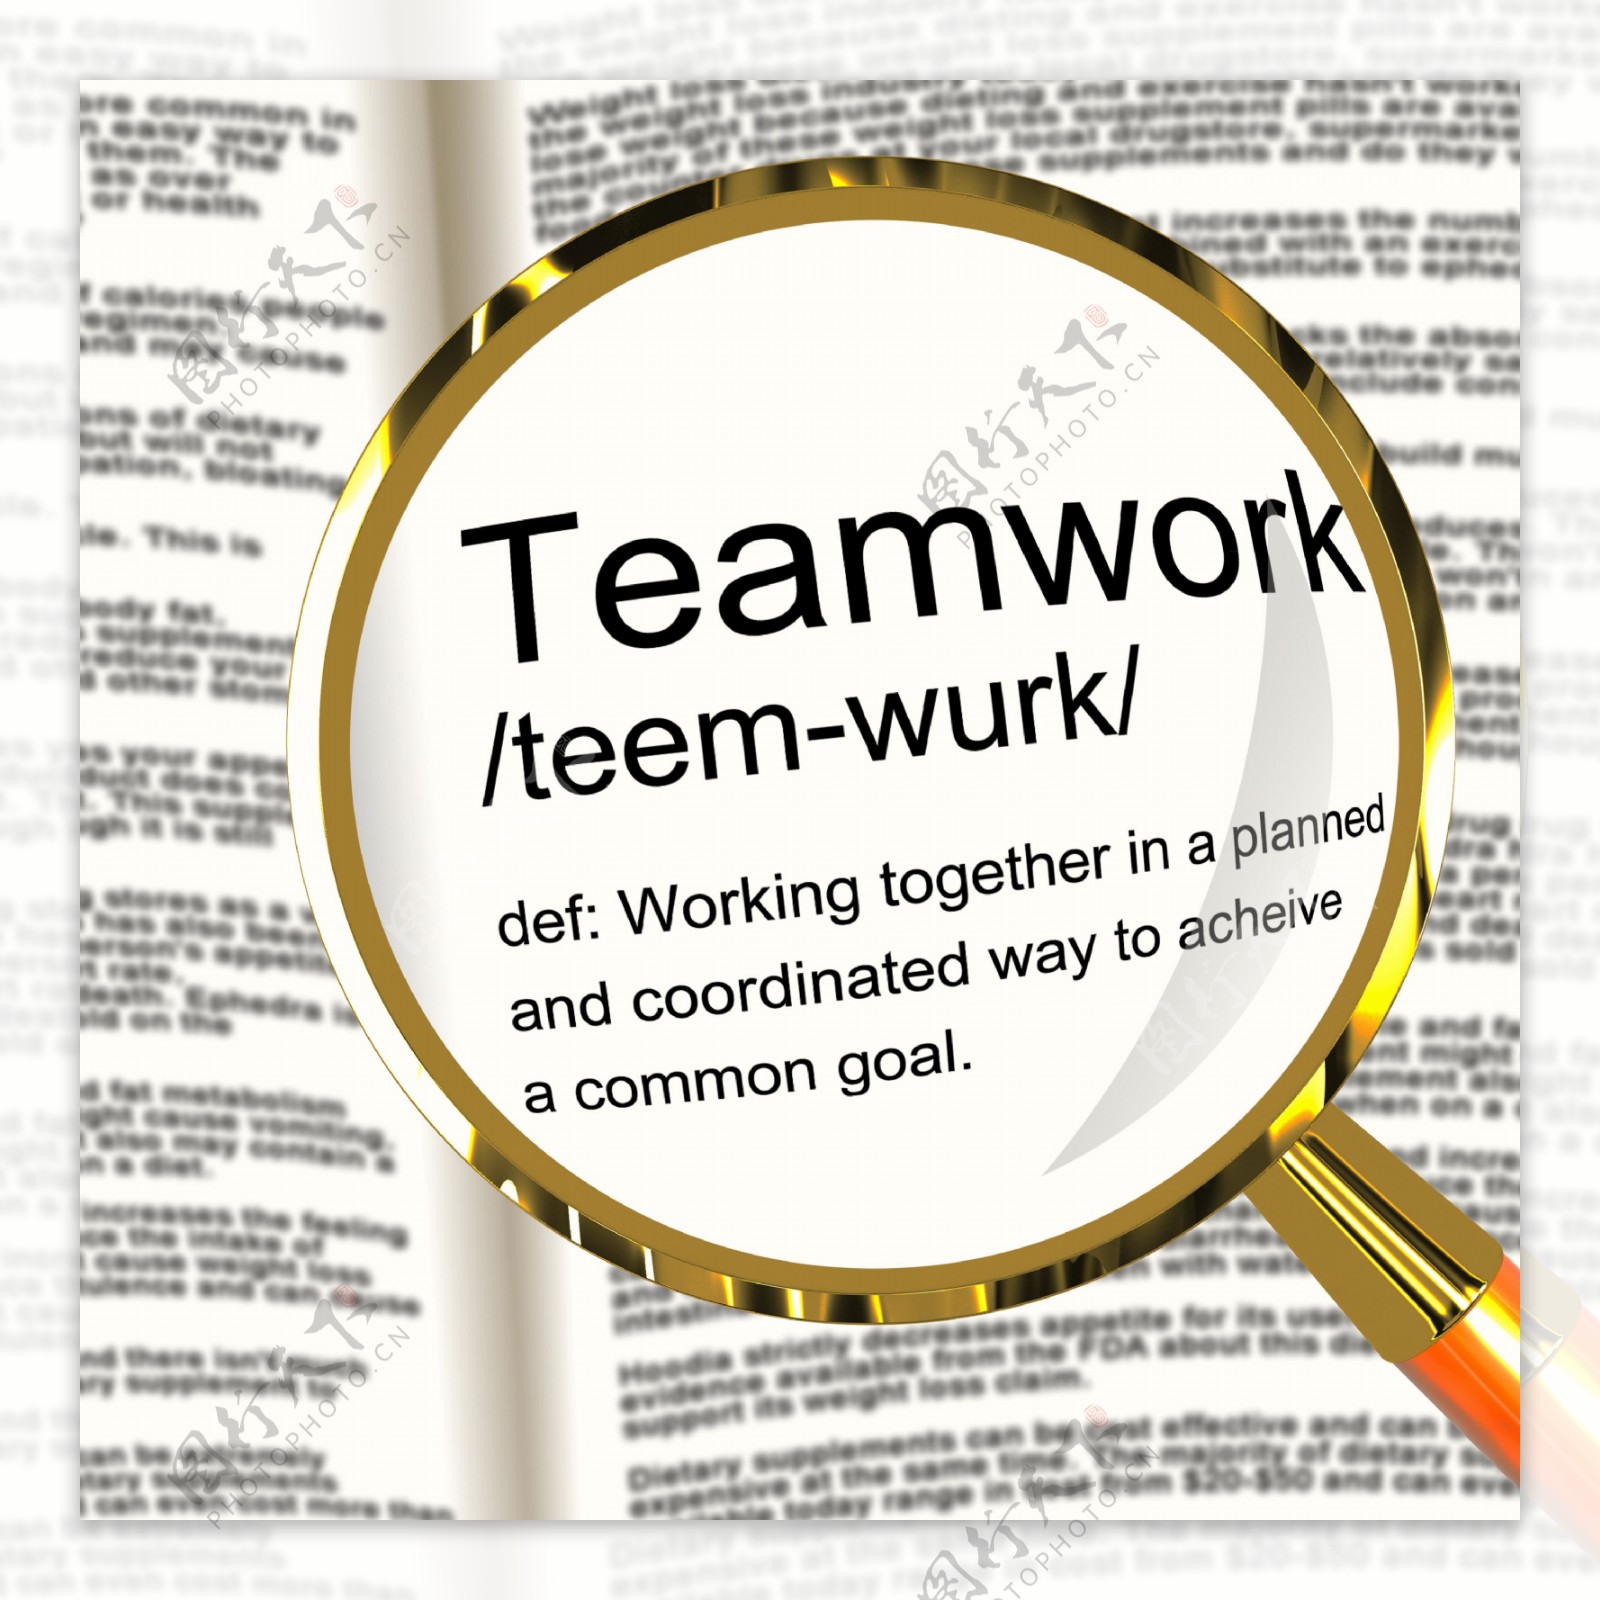 团队的定义放大显示共同努力和合作